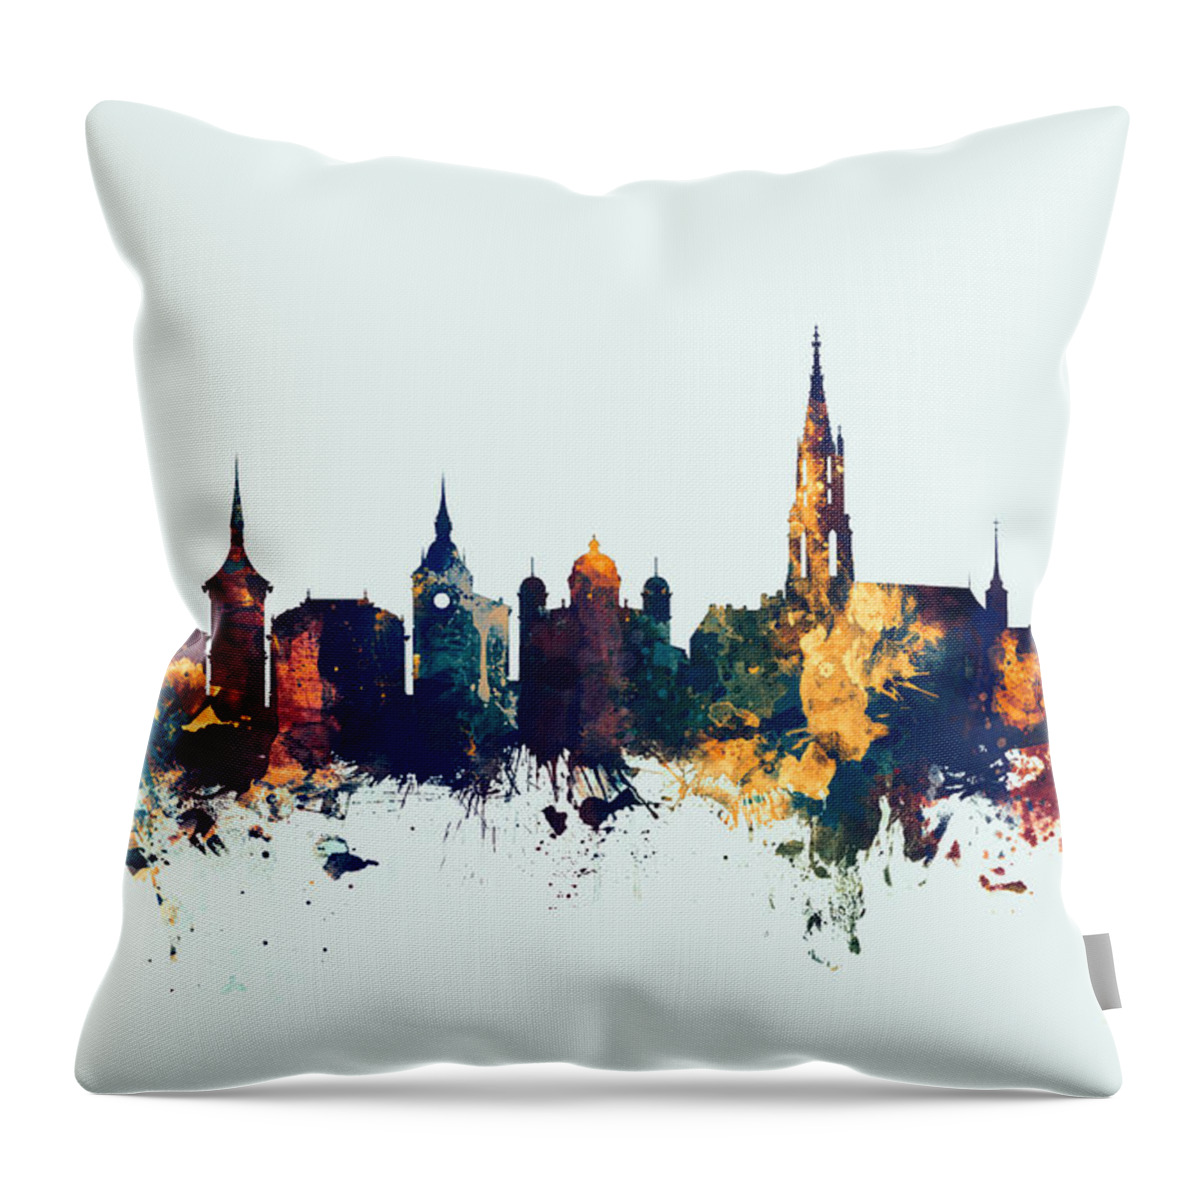 Bern Throw Pillow featuring the digital art Bern Switzerland Skyline by Michael Tompsett